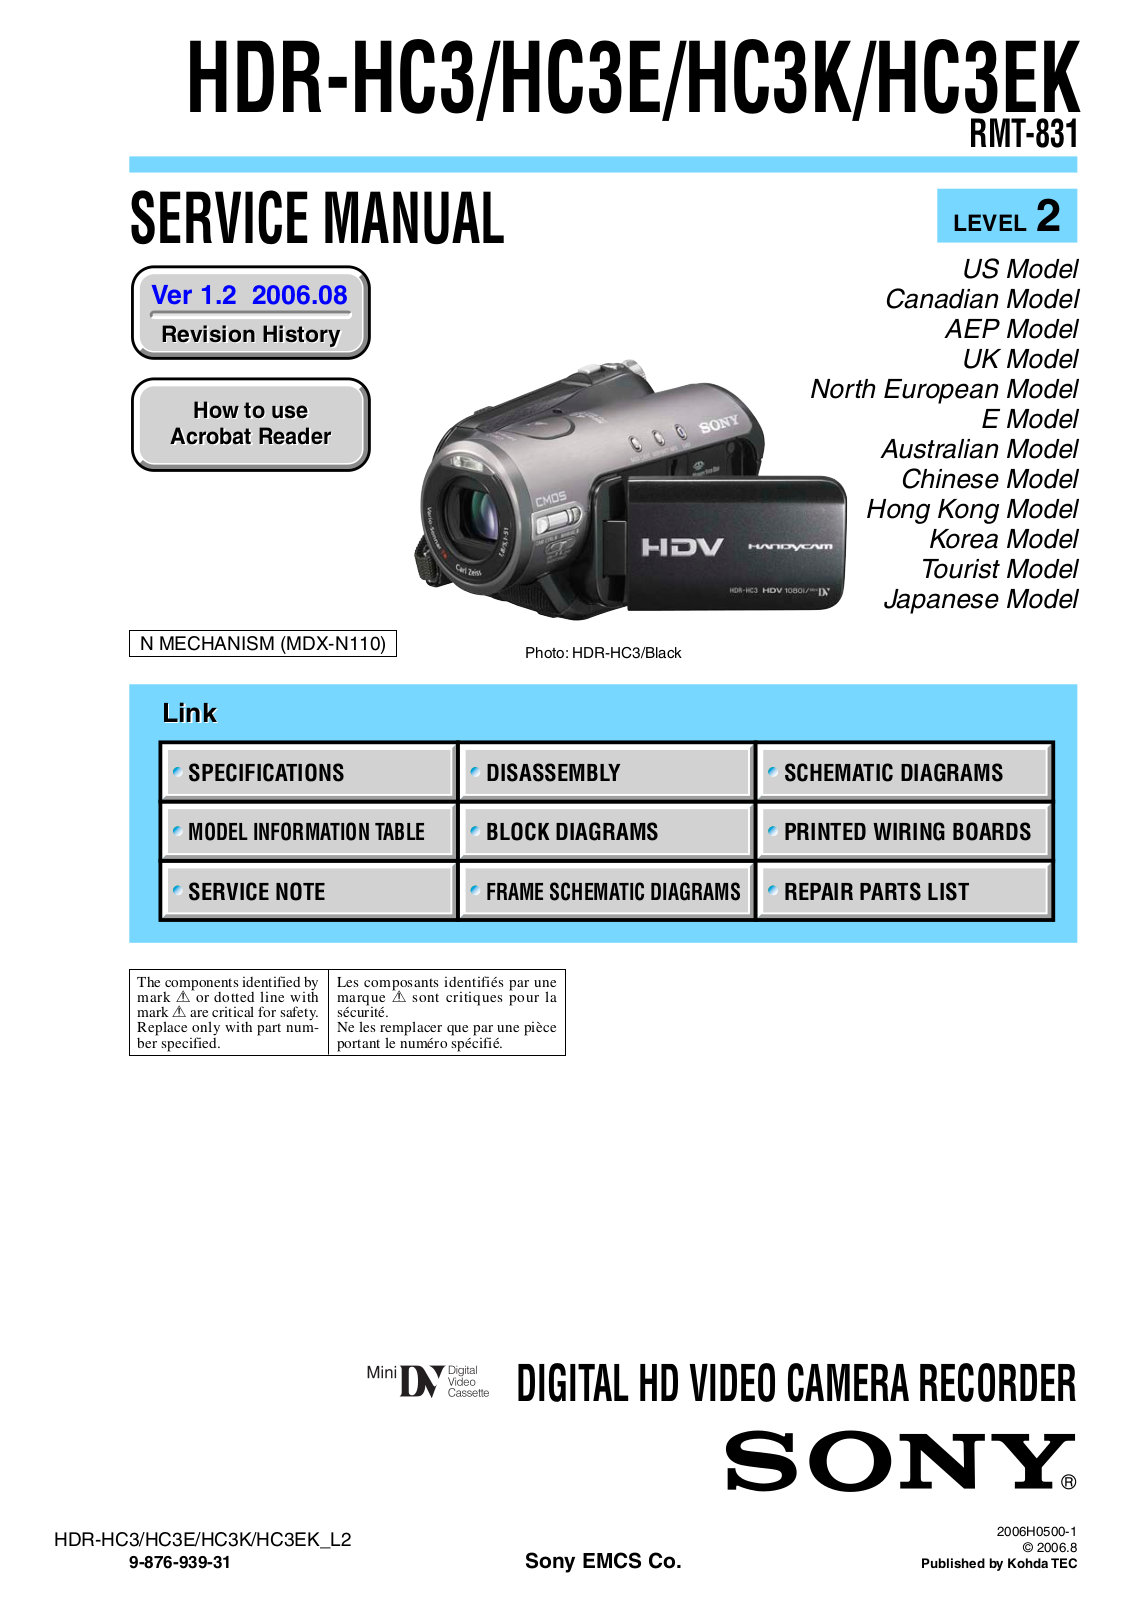 Sony HDR-HC3K, HDR-HC3, HDR-HC3E, HDR-HC3EK User Manual